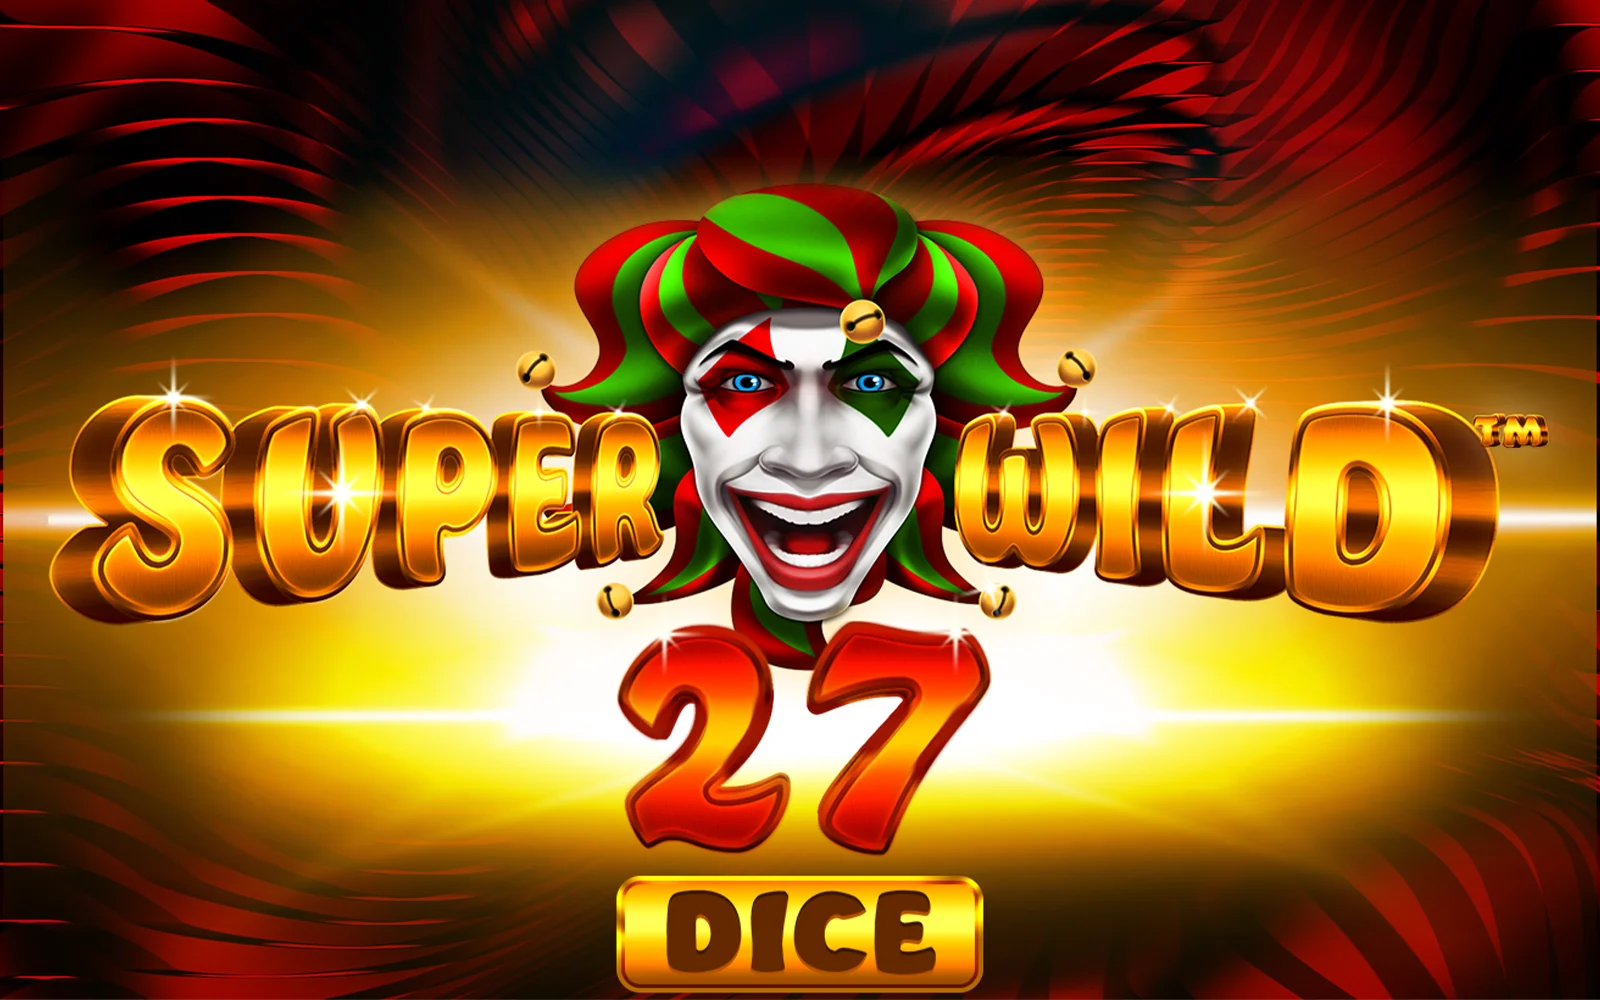 Speel Super Wild 27 Dice op Starcasino.be online casino